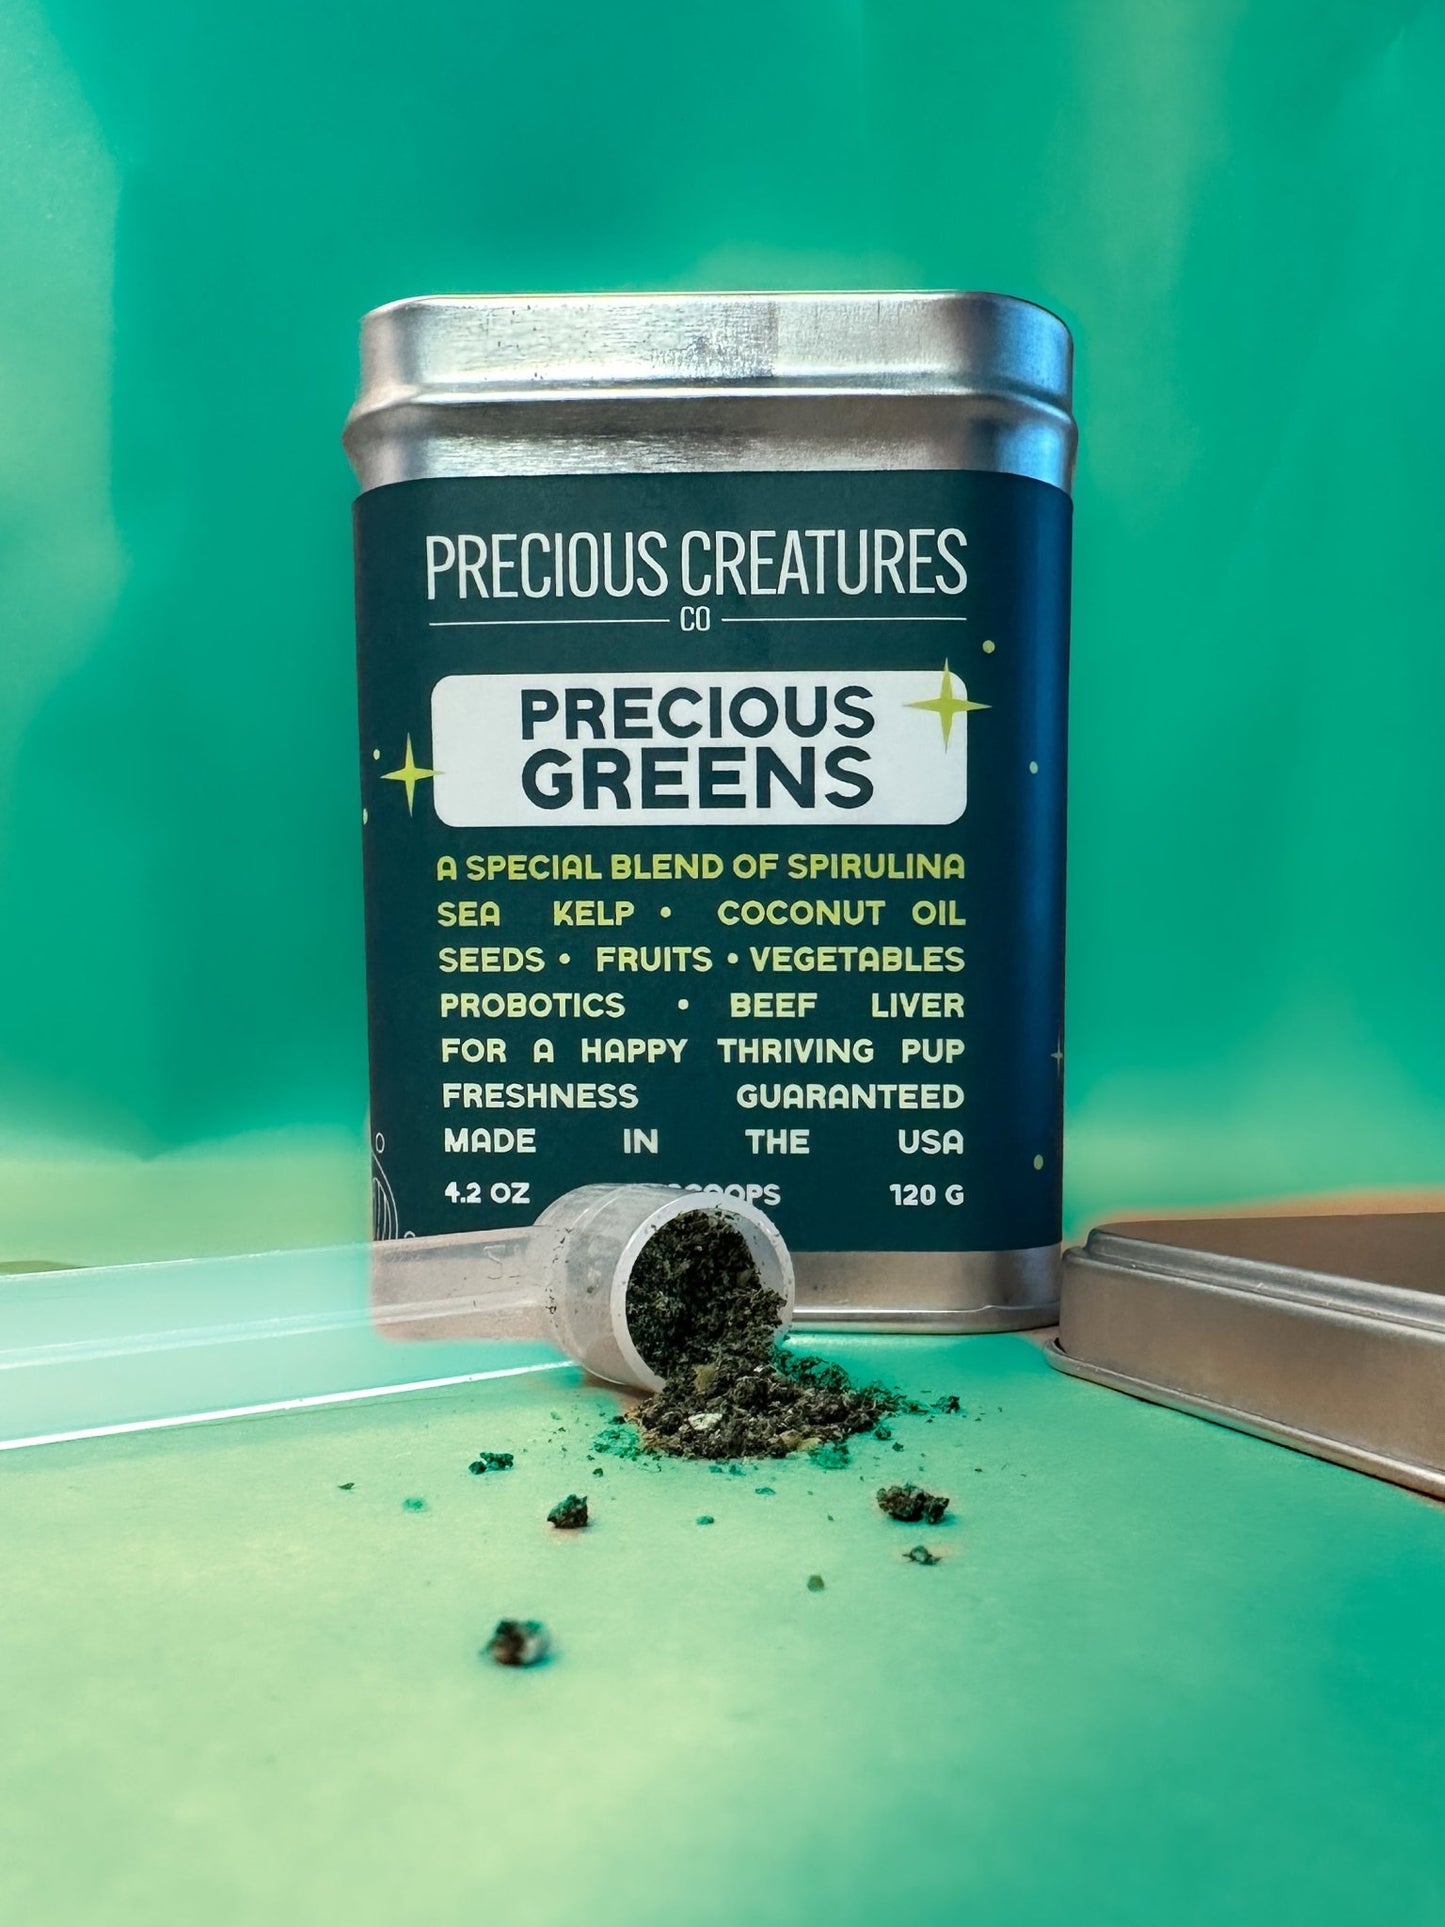 Precious Greens - Precious Creatures Co